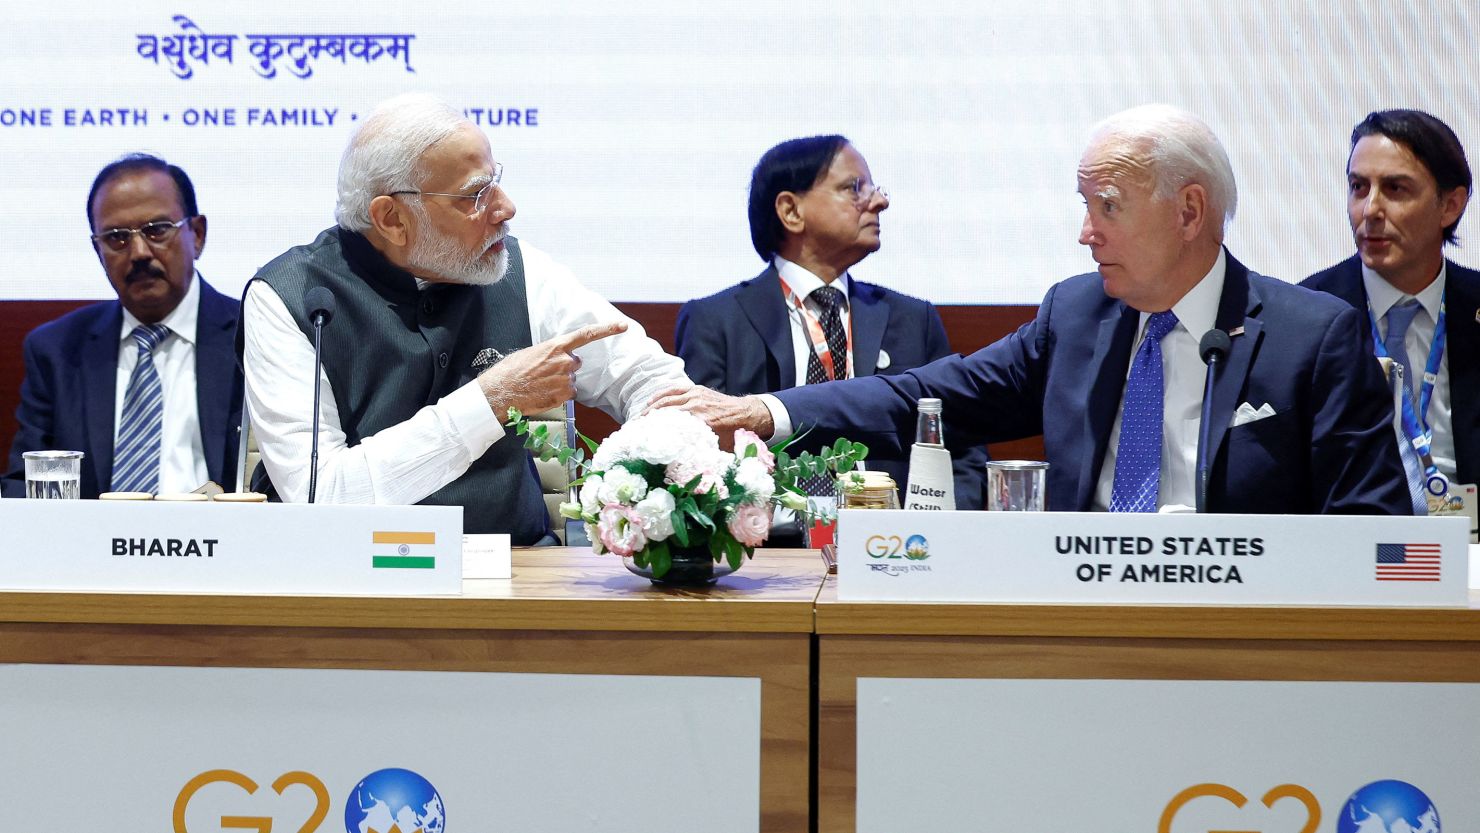 President Joe Biden and Indian Prime Minister Narendra Modi speak at the G20 summit in New Delhi on September 9, 2023.